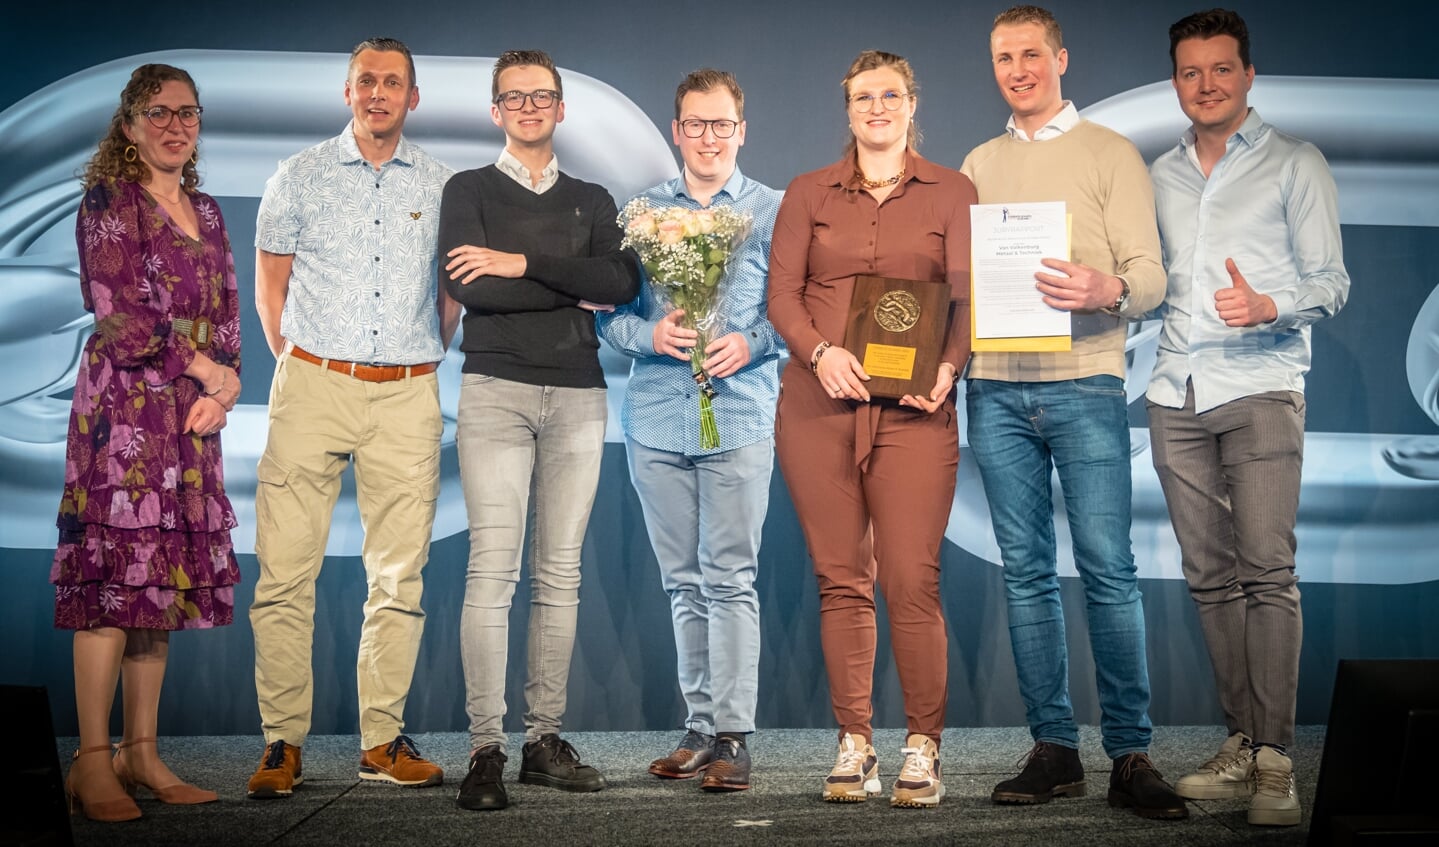 Een mooie eerste prijs voor Van Valkenburg Metaal & Techniek in de categorie Bouw, Installatie & Techniek. Beeld: Valkenburg Metaal & Techniek